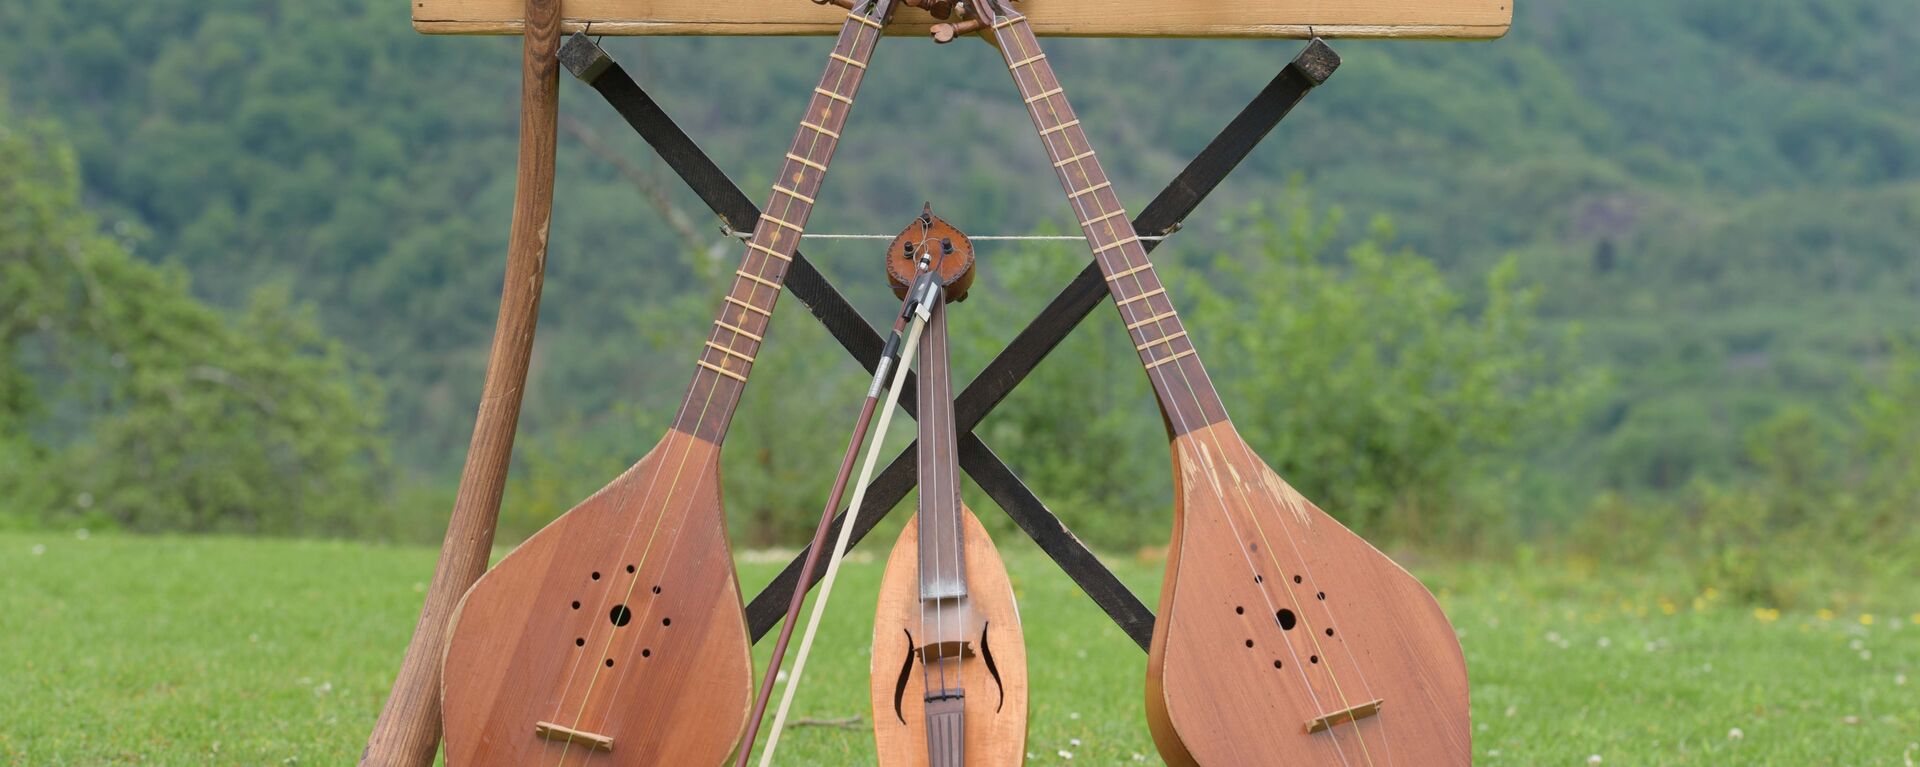 Изготовление музыкальных инструментов - Sputnik Абхазия, 1920, 17.06.2016